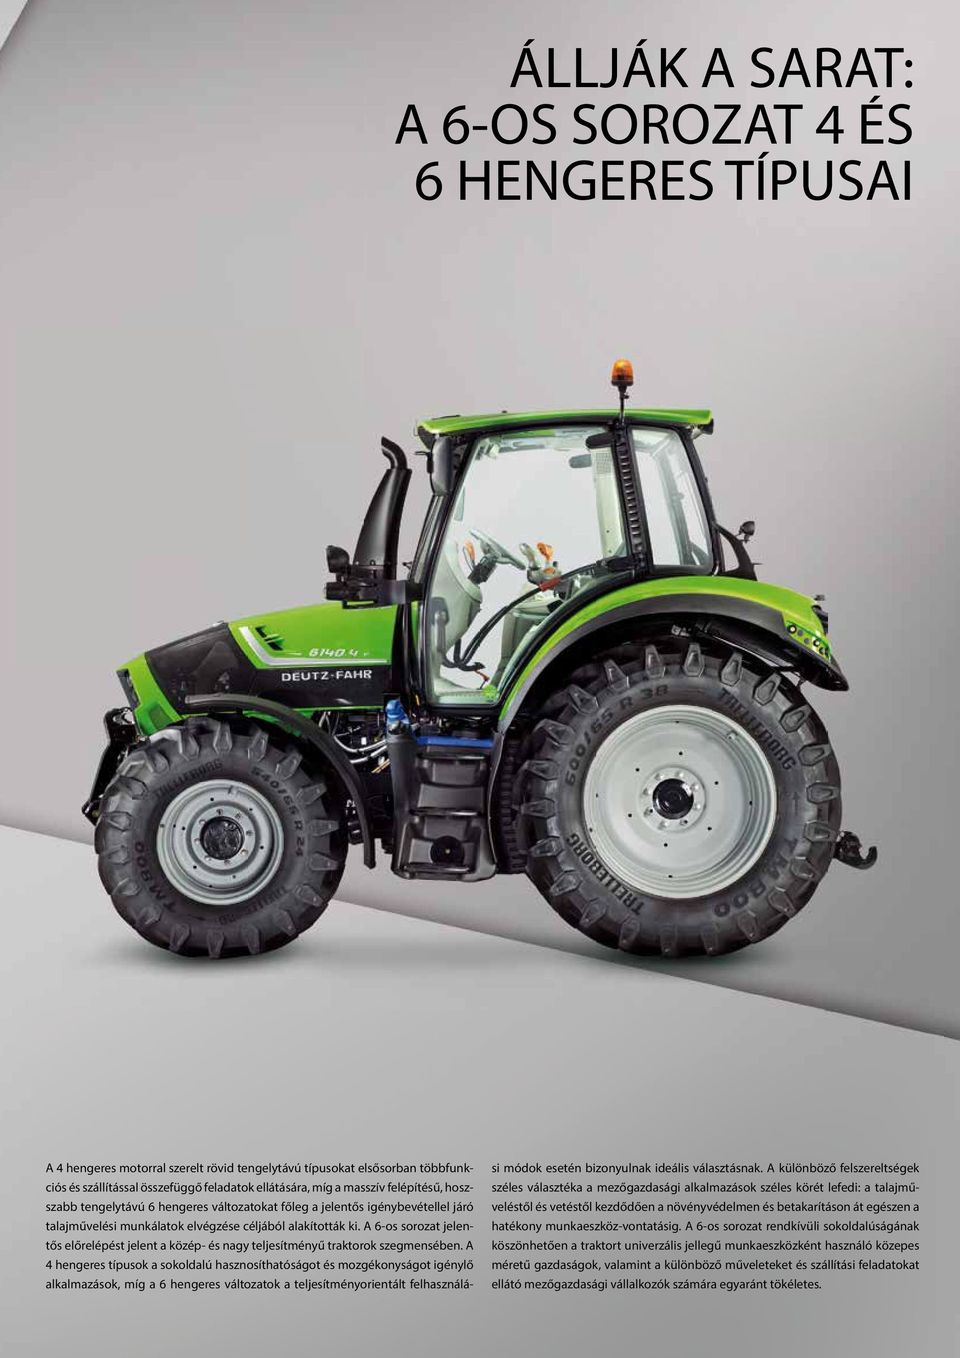 A 6-os sorozat jelentős előrelépést jelent a közép- és nagy teljesítményű traktorok szegmensében.